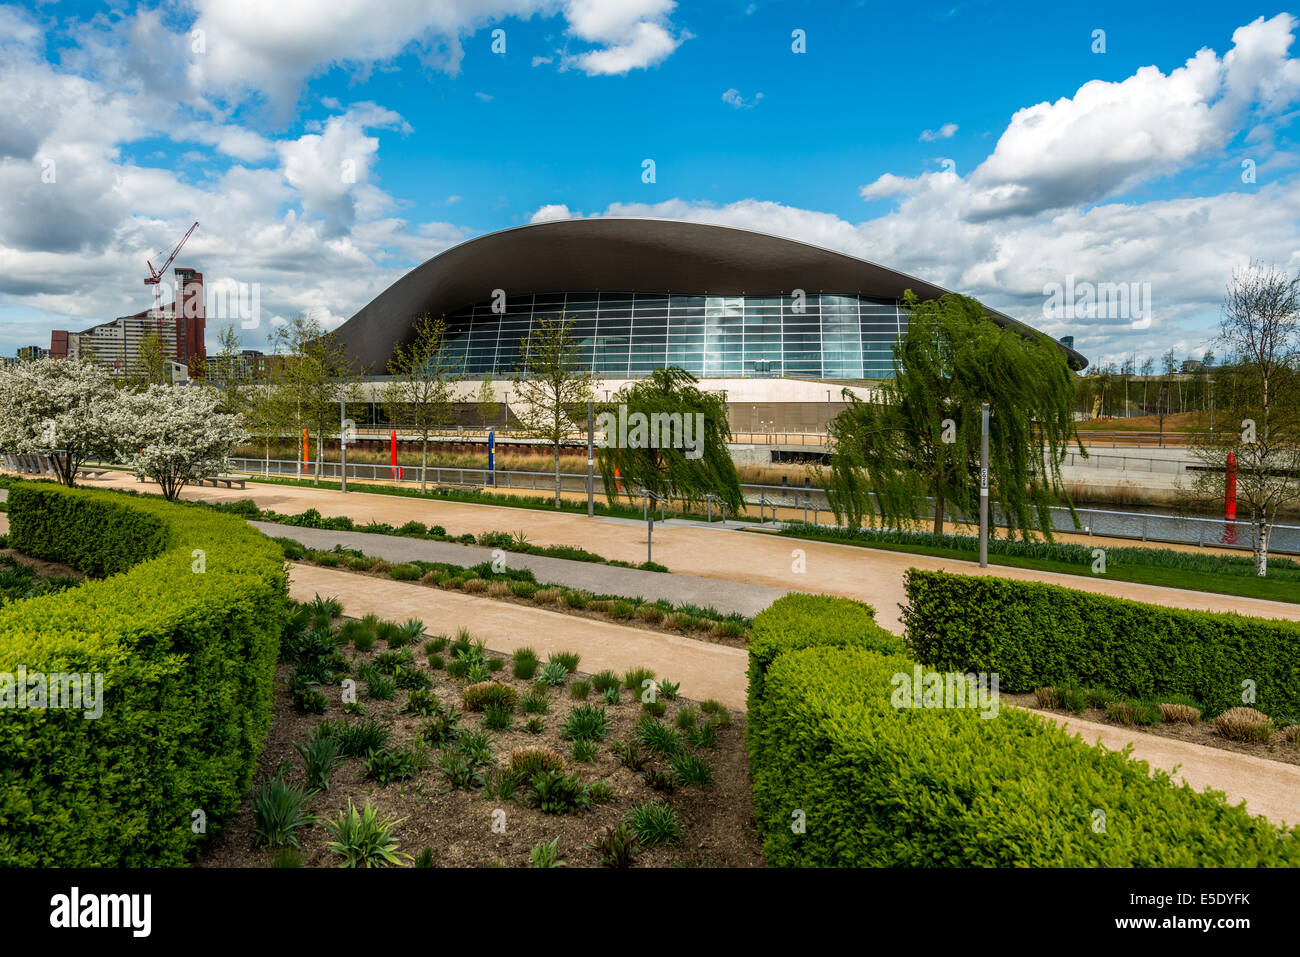 Le Centre Aquatique de Londres est une installation intérieure avec deux piscines et un bassin de plongée dans le Queen Elizabeth Olympic Park Banque D'Images